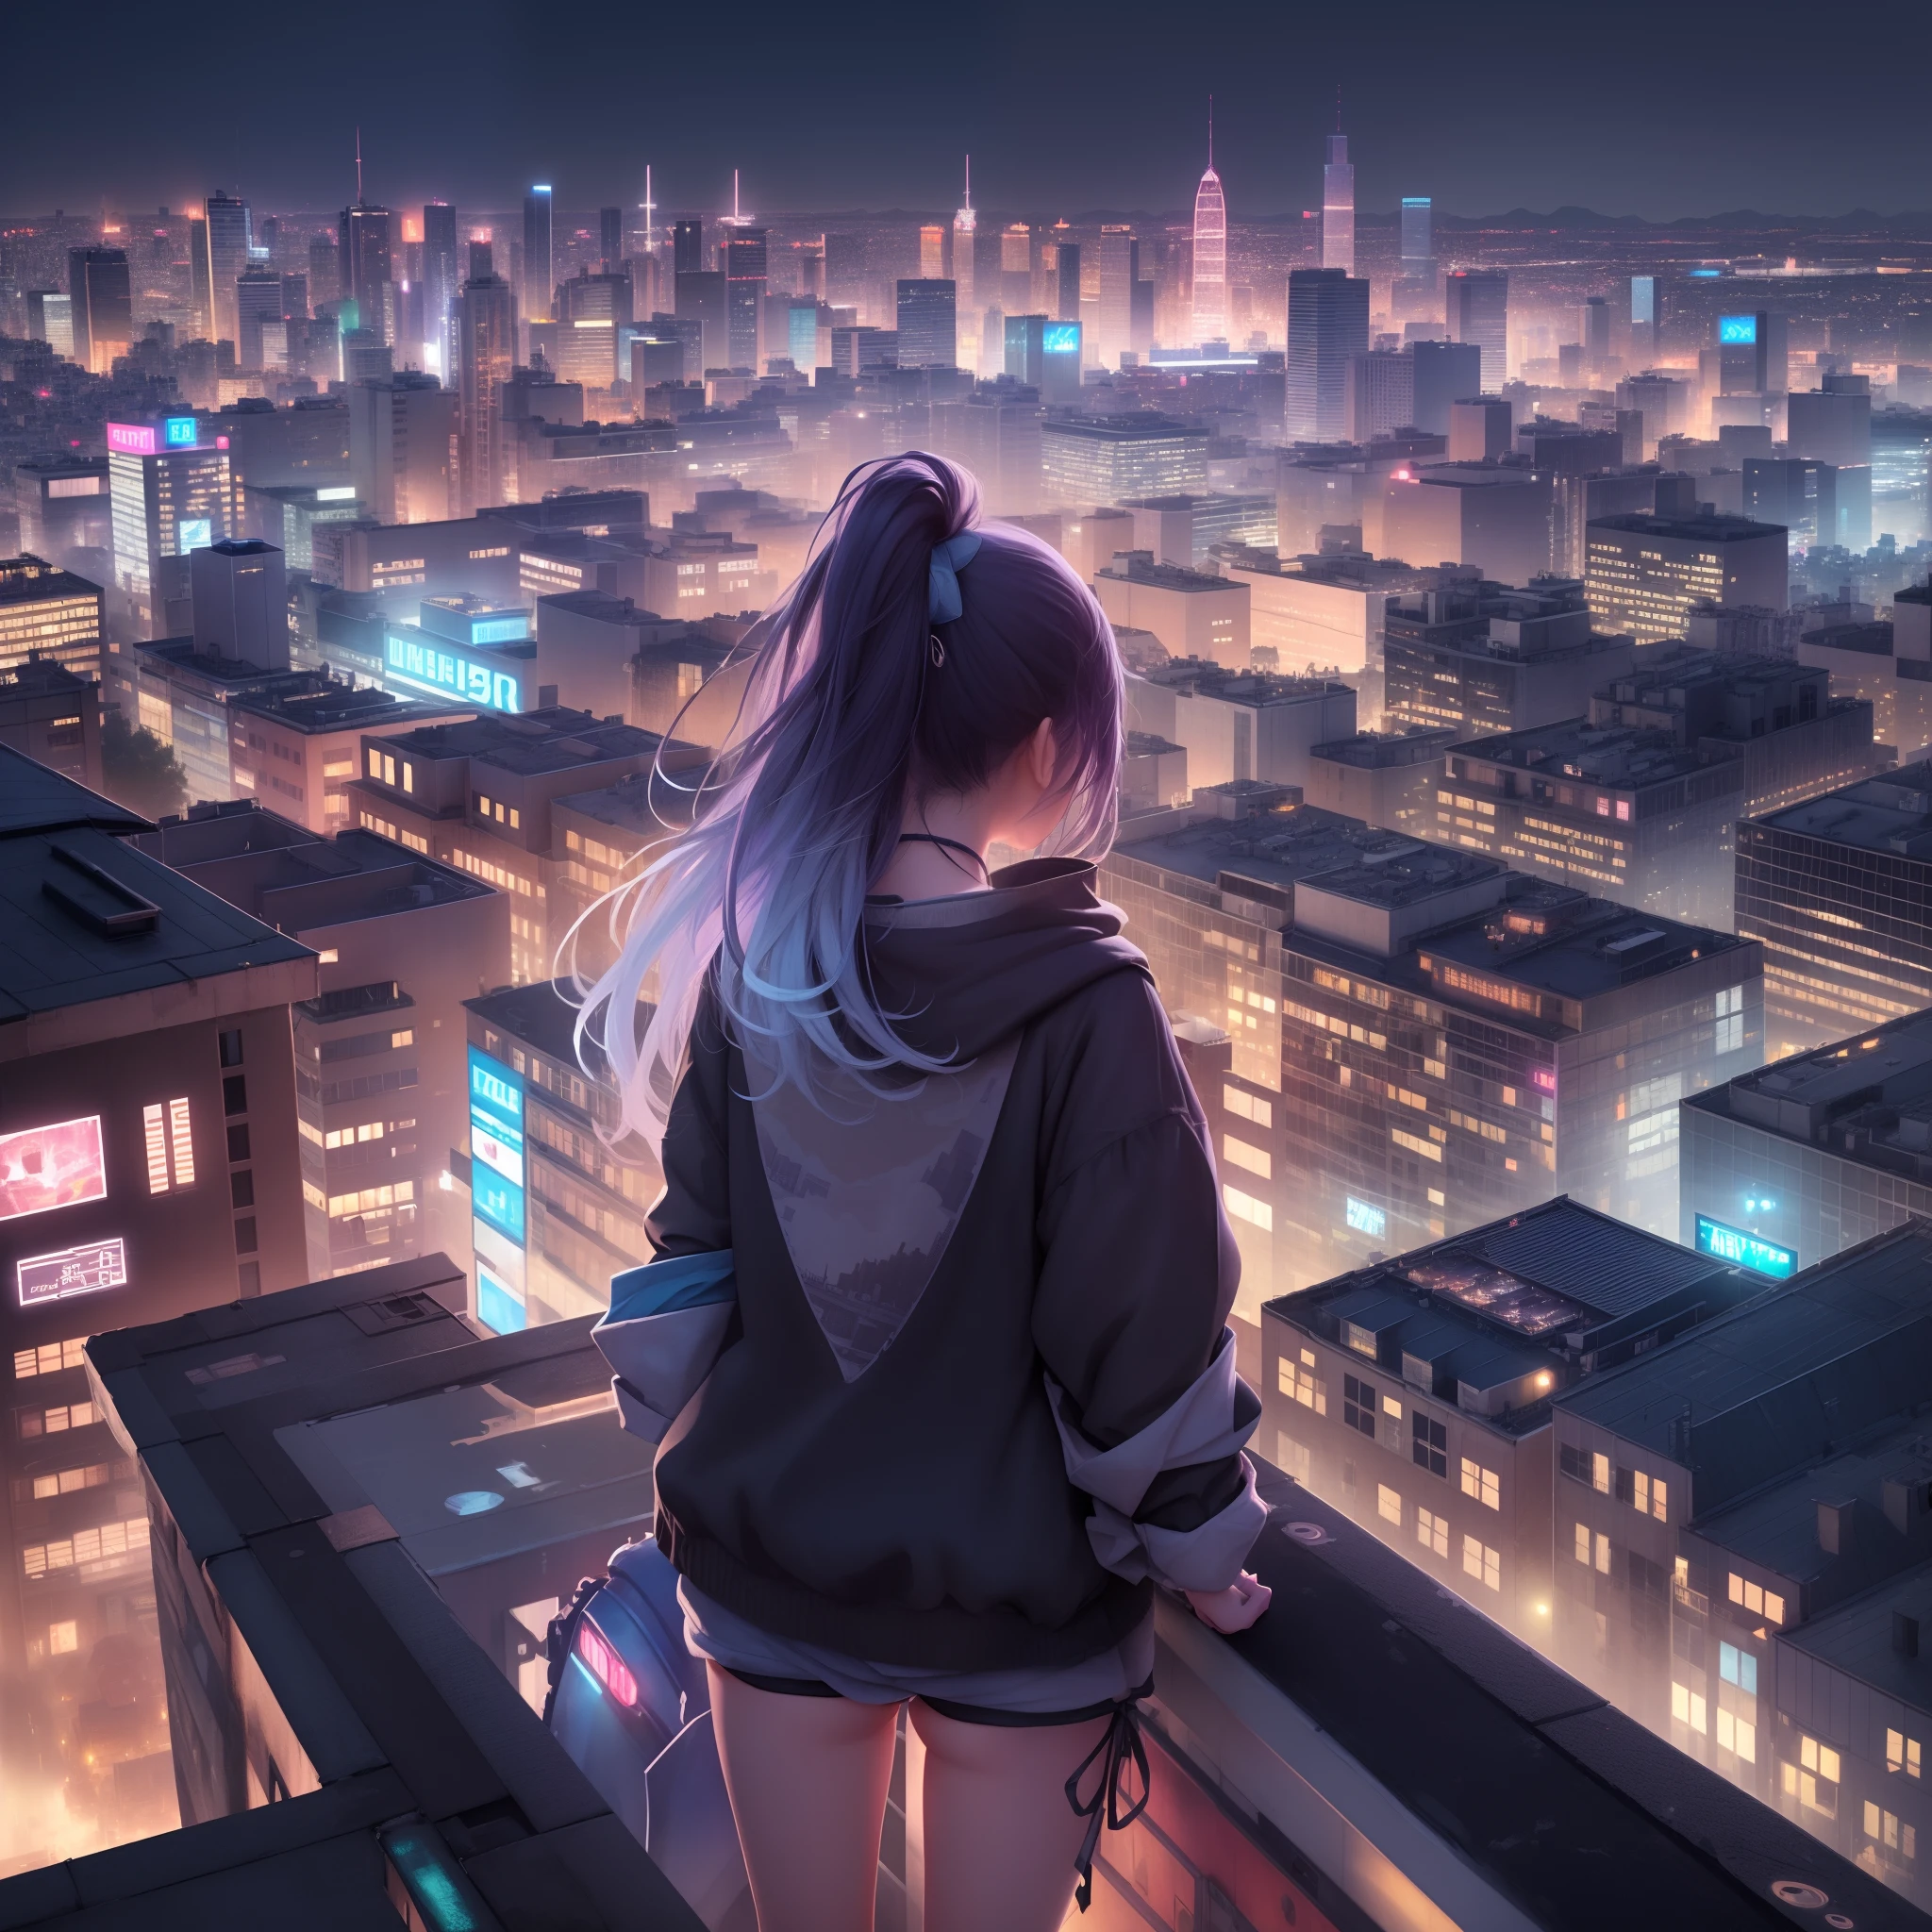 (vraie texture、8k)、Fille regardant la ville depuis le toit d’un immeuble、(paysage urbain détaillé、lumières colorées、Vue arrière)、Vêtements et cheveux flottant au vent